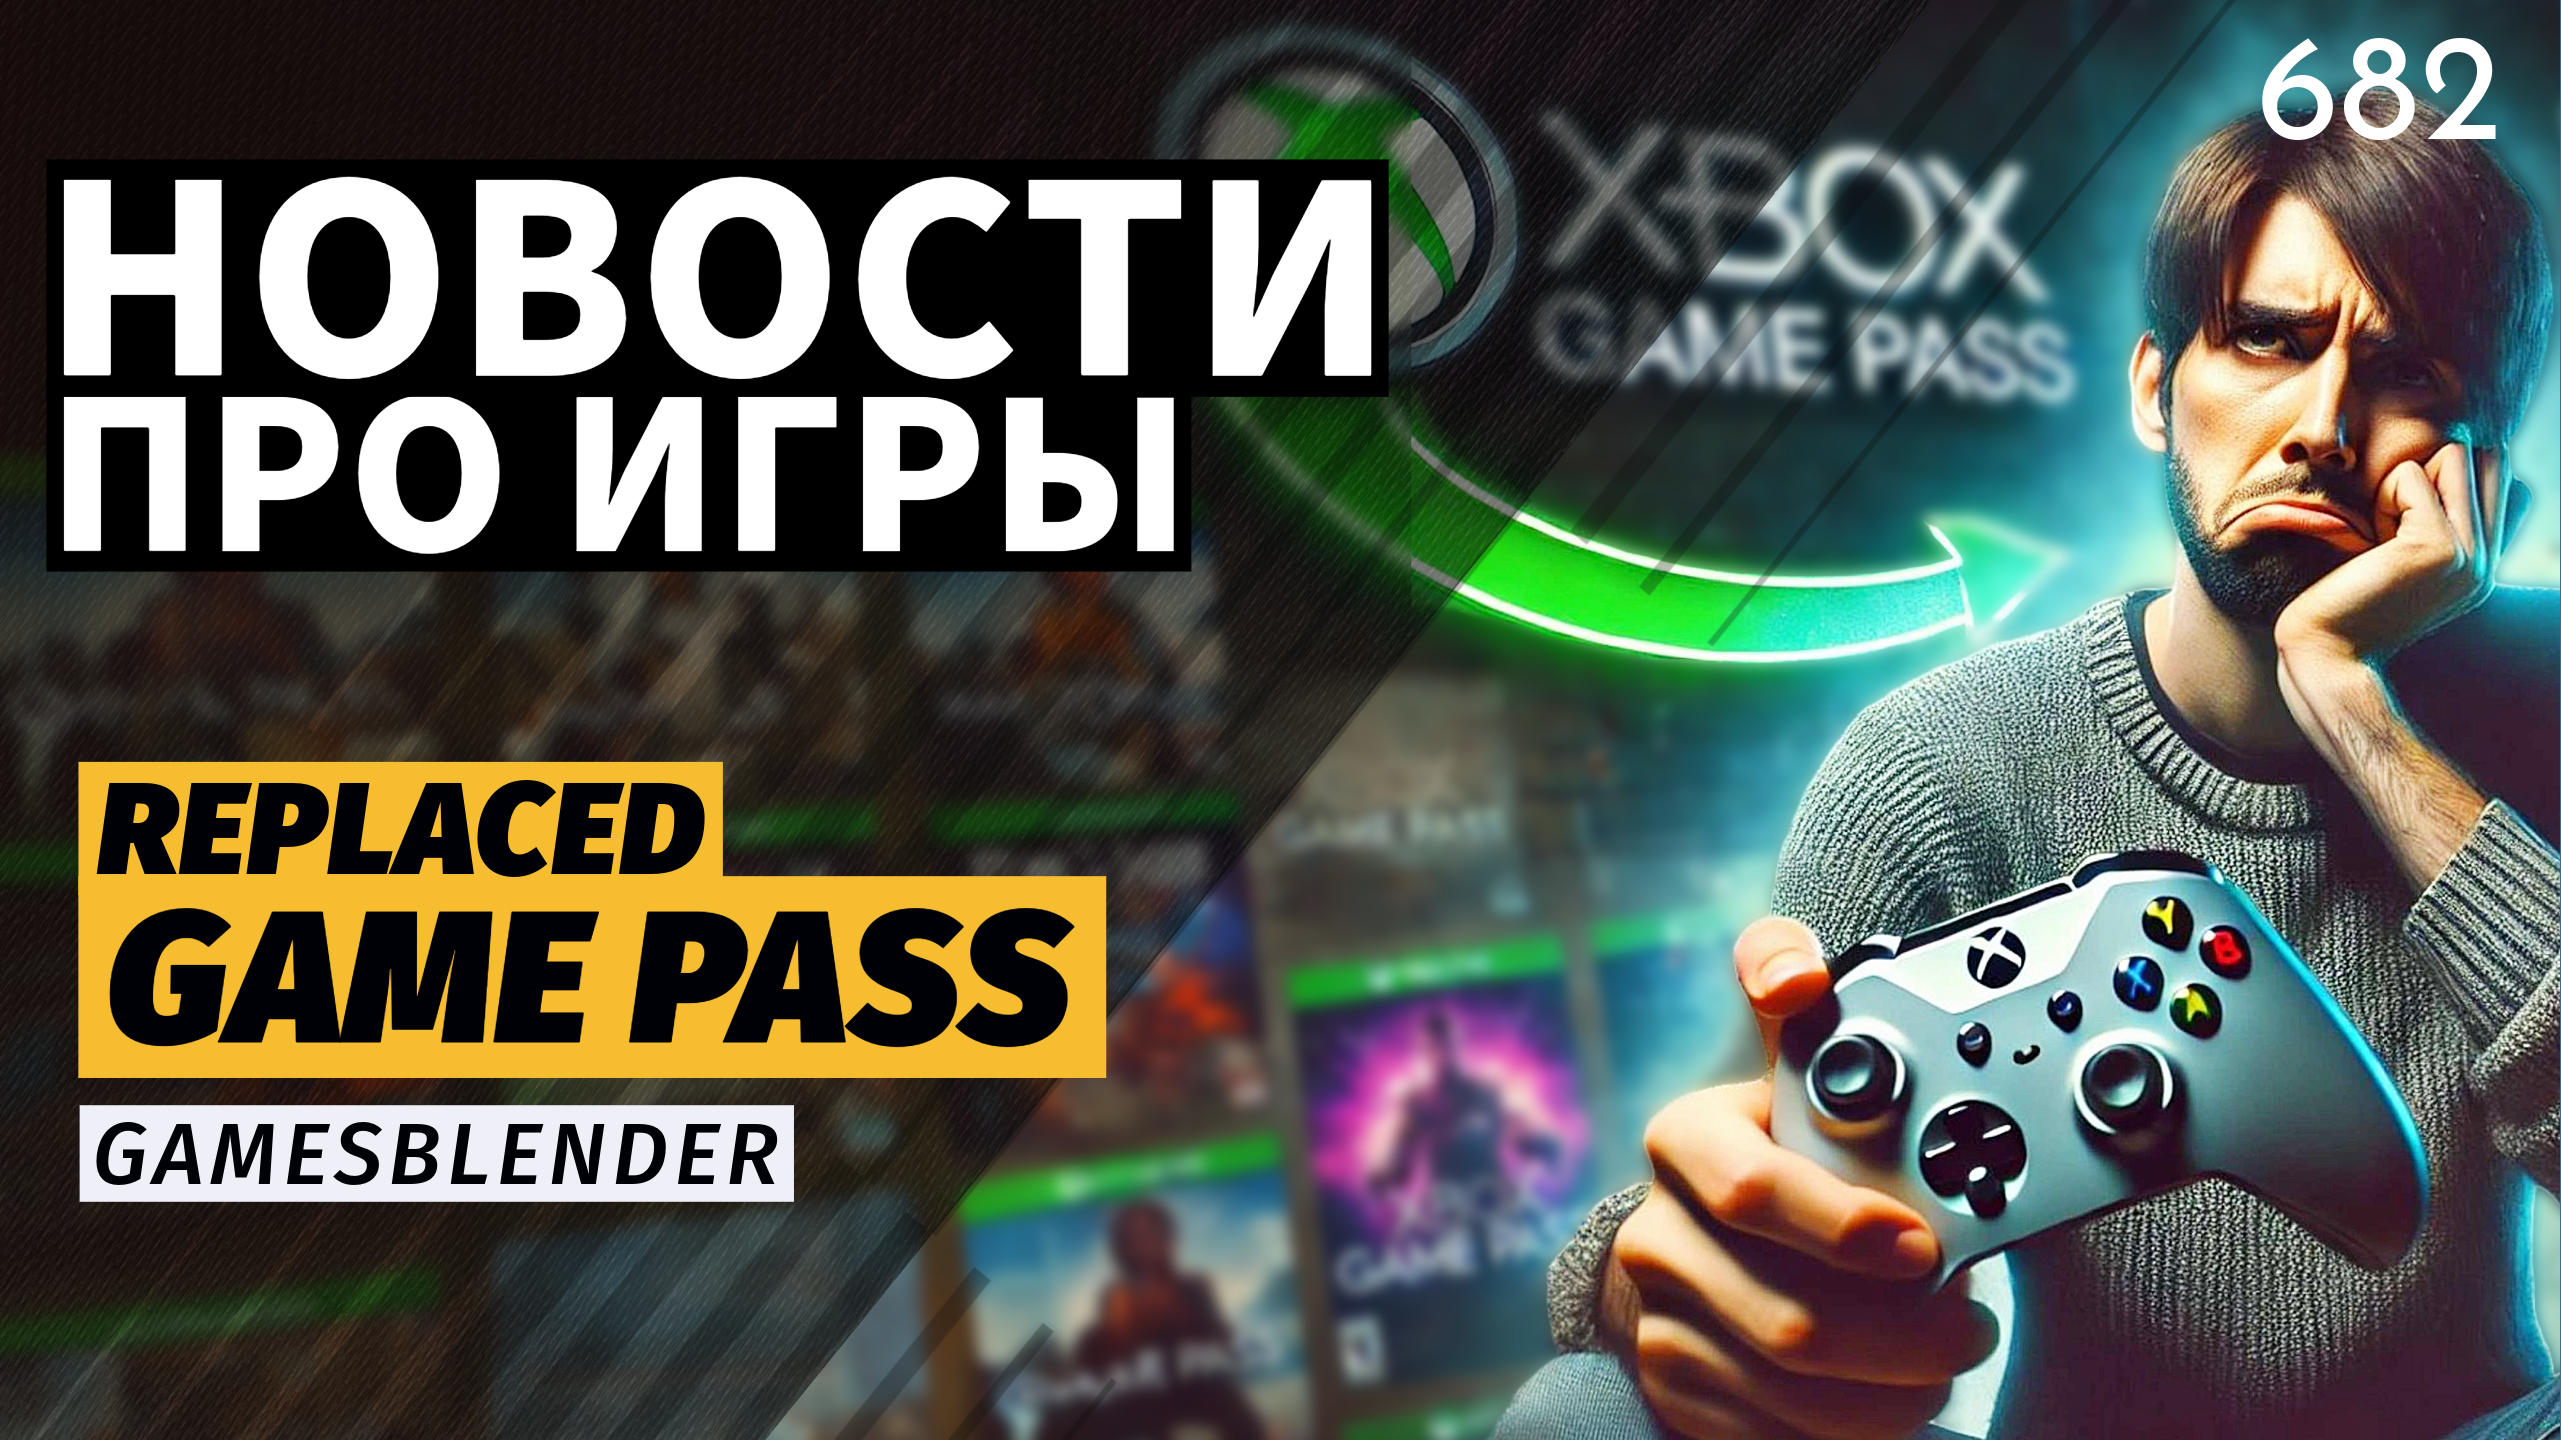 Gamesblender № 682: закрытие авторов «Готики», подорожание Game Pass и маркировка игр в России